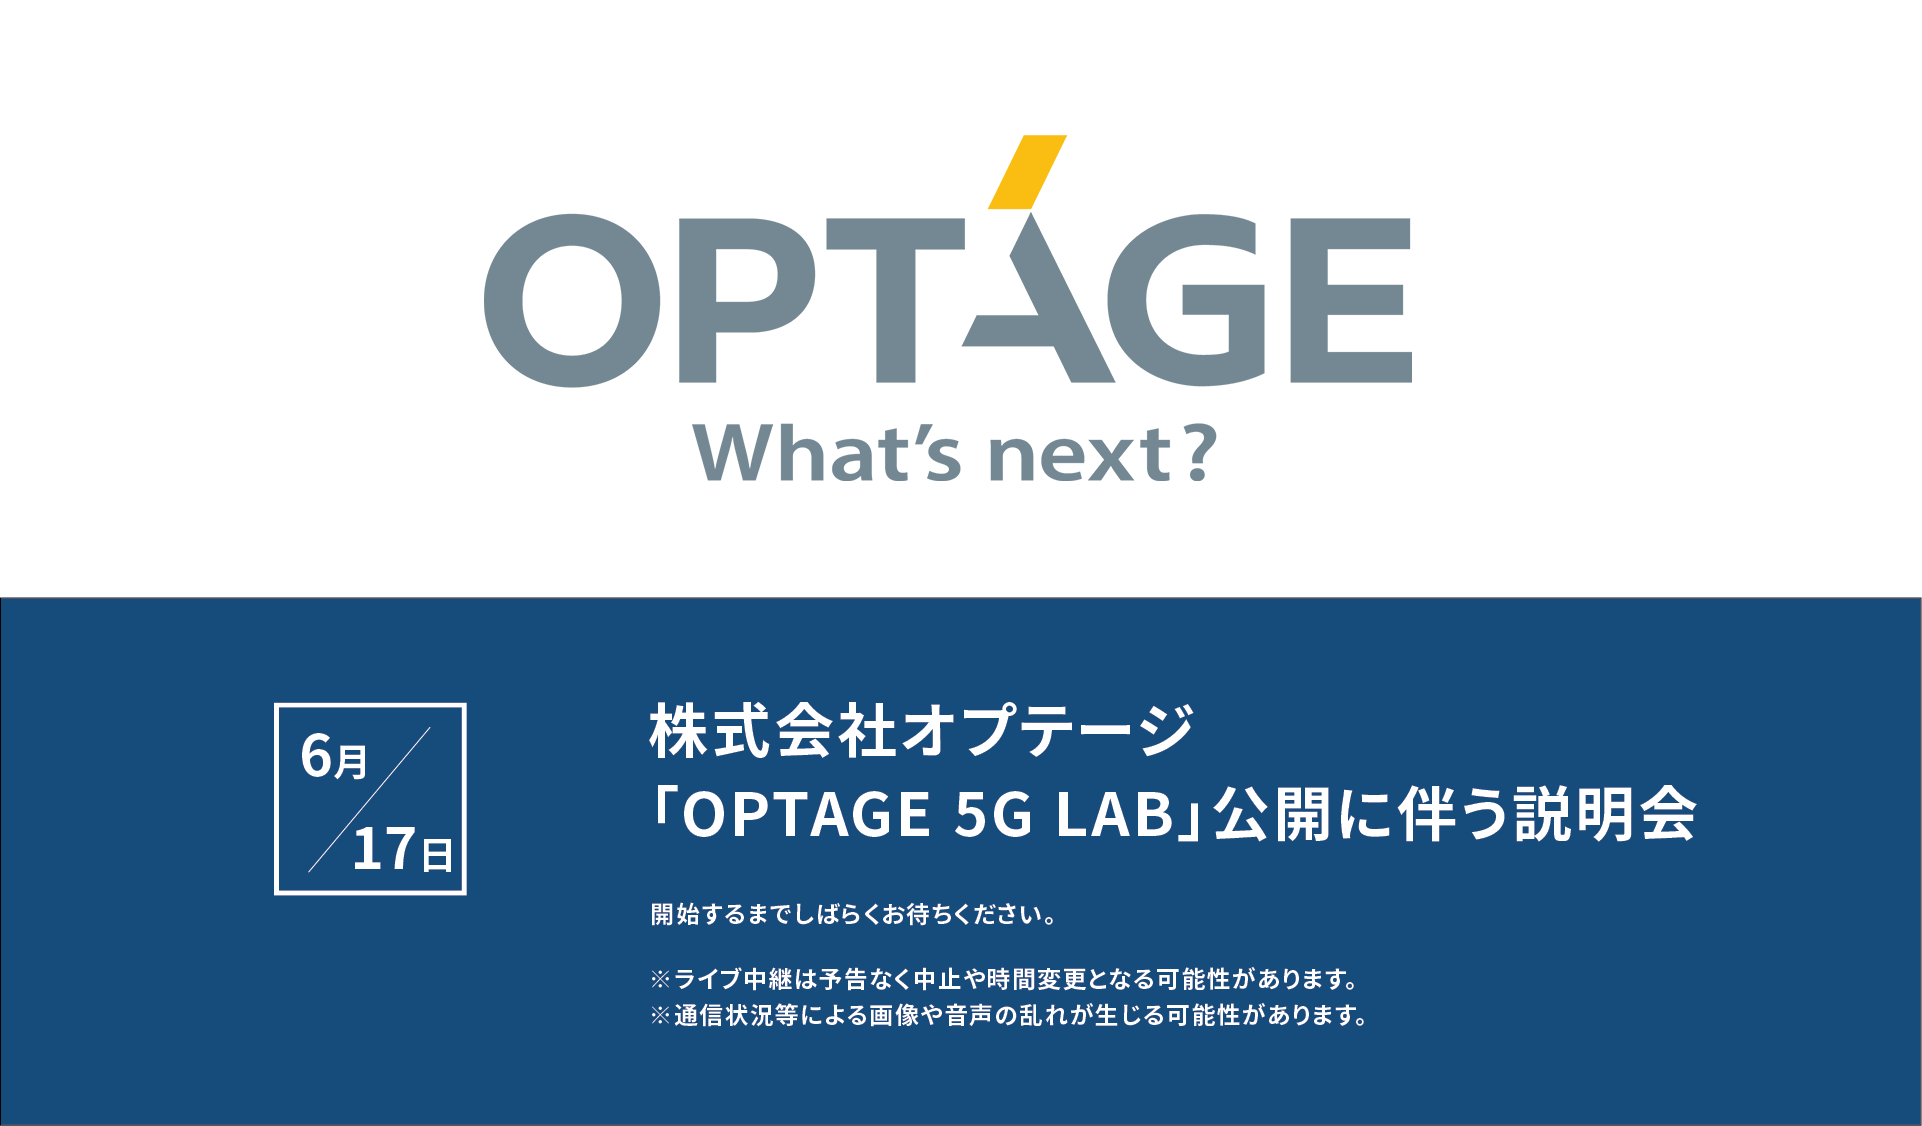 オプテージの「ローカル5G」オープンラボ、『OPTAGE 5G LAB』メディア向け説明会・見学会